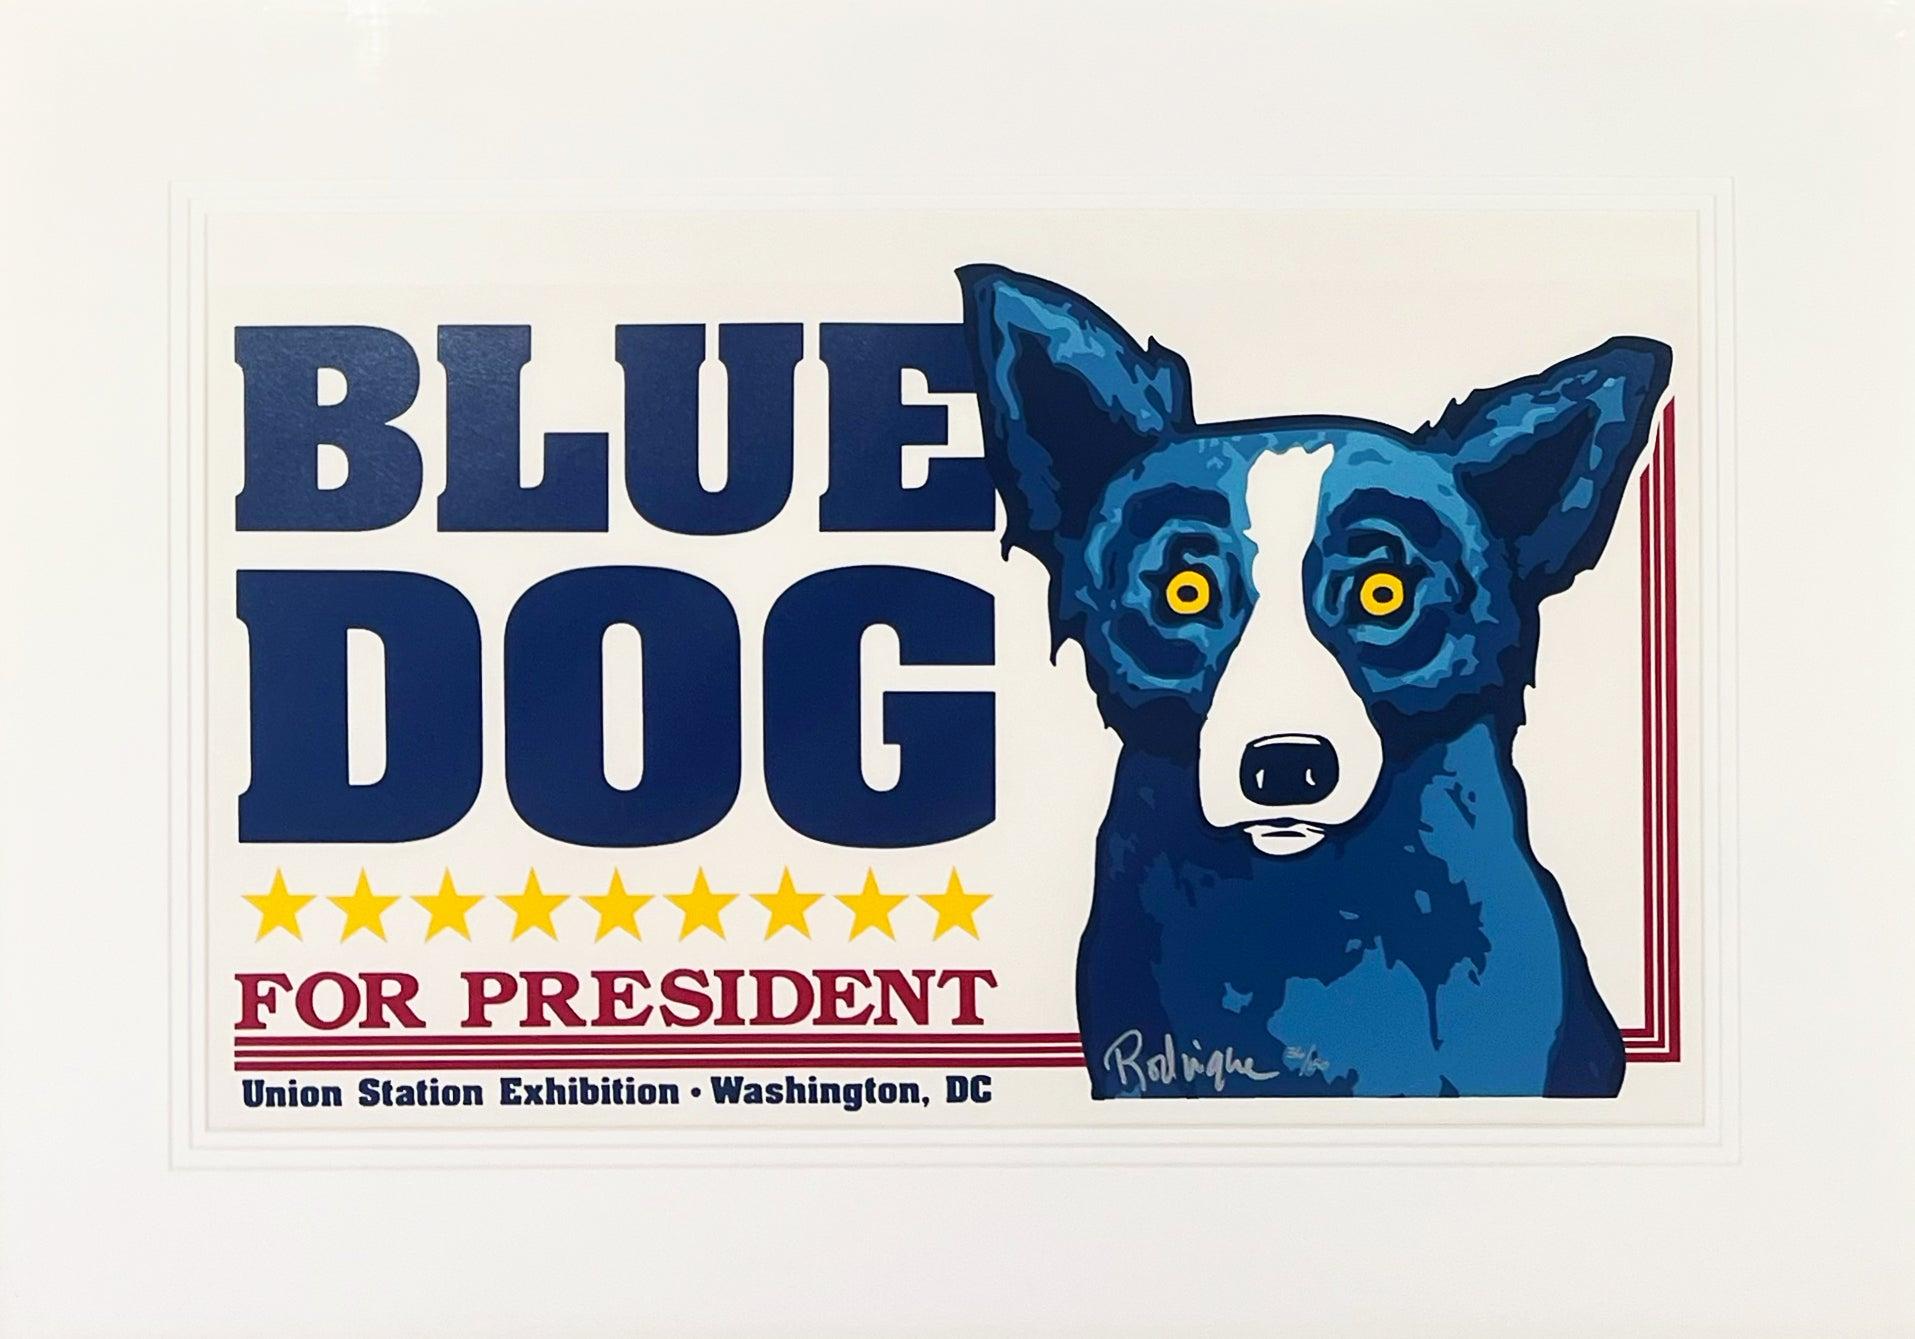 Artistics : George Rodrigues
Titre : Union Station (Blue Dog for President)
Médium : Sérigraphie
Année : 1996
Edition : 36/150
Encadré Taille : 31